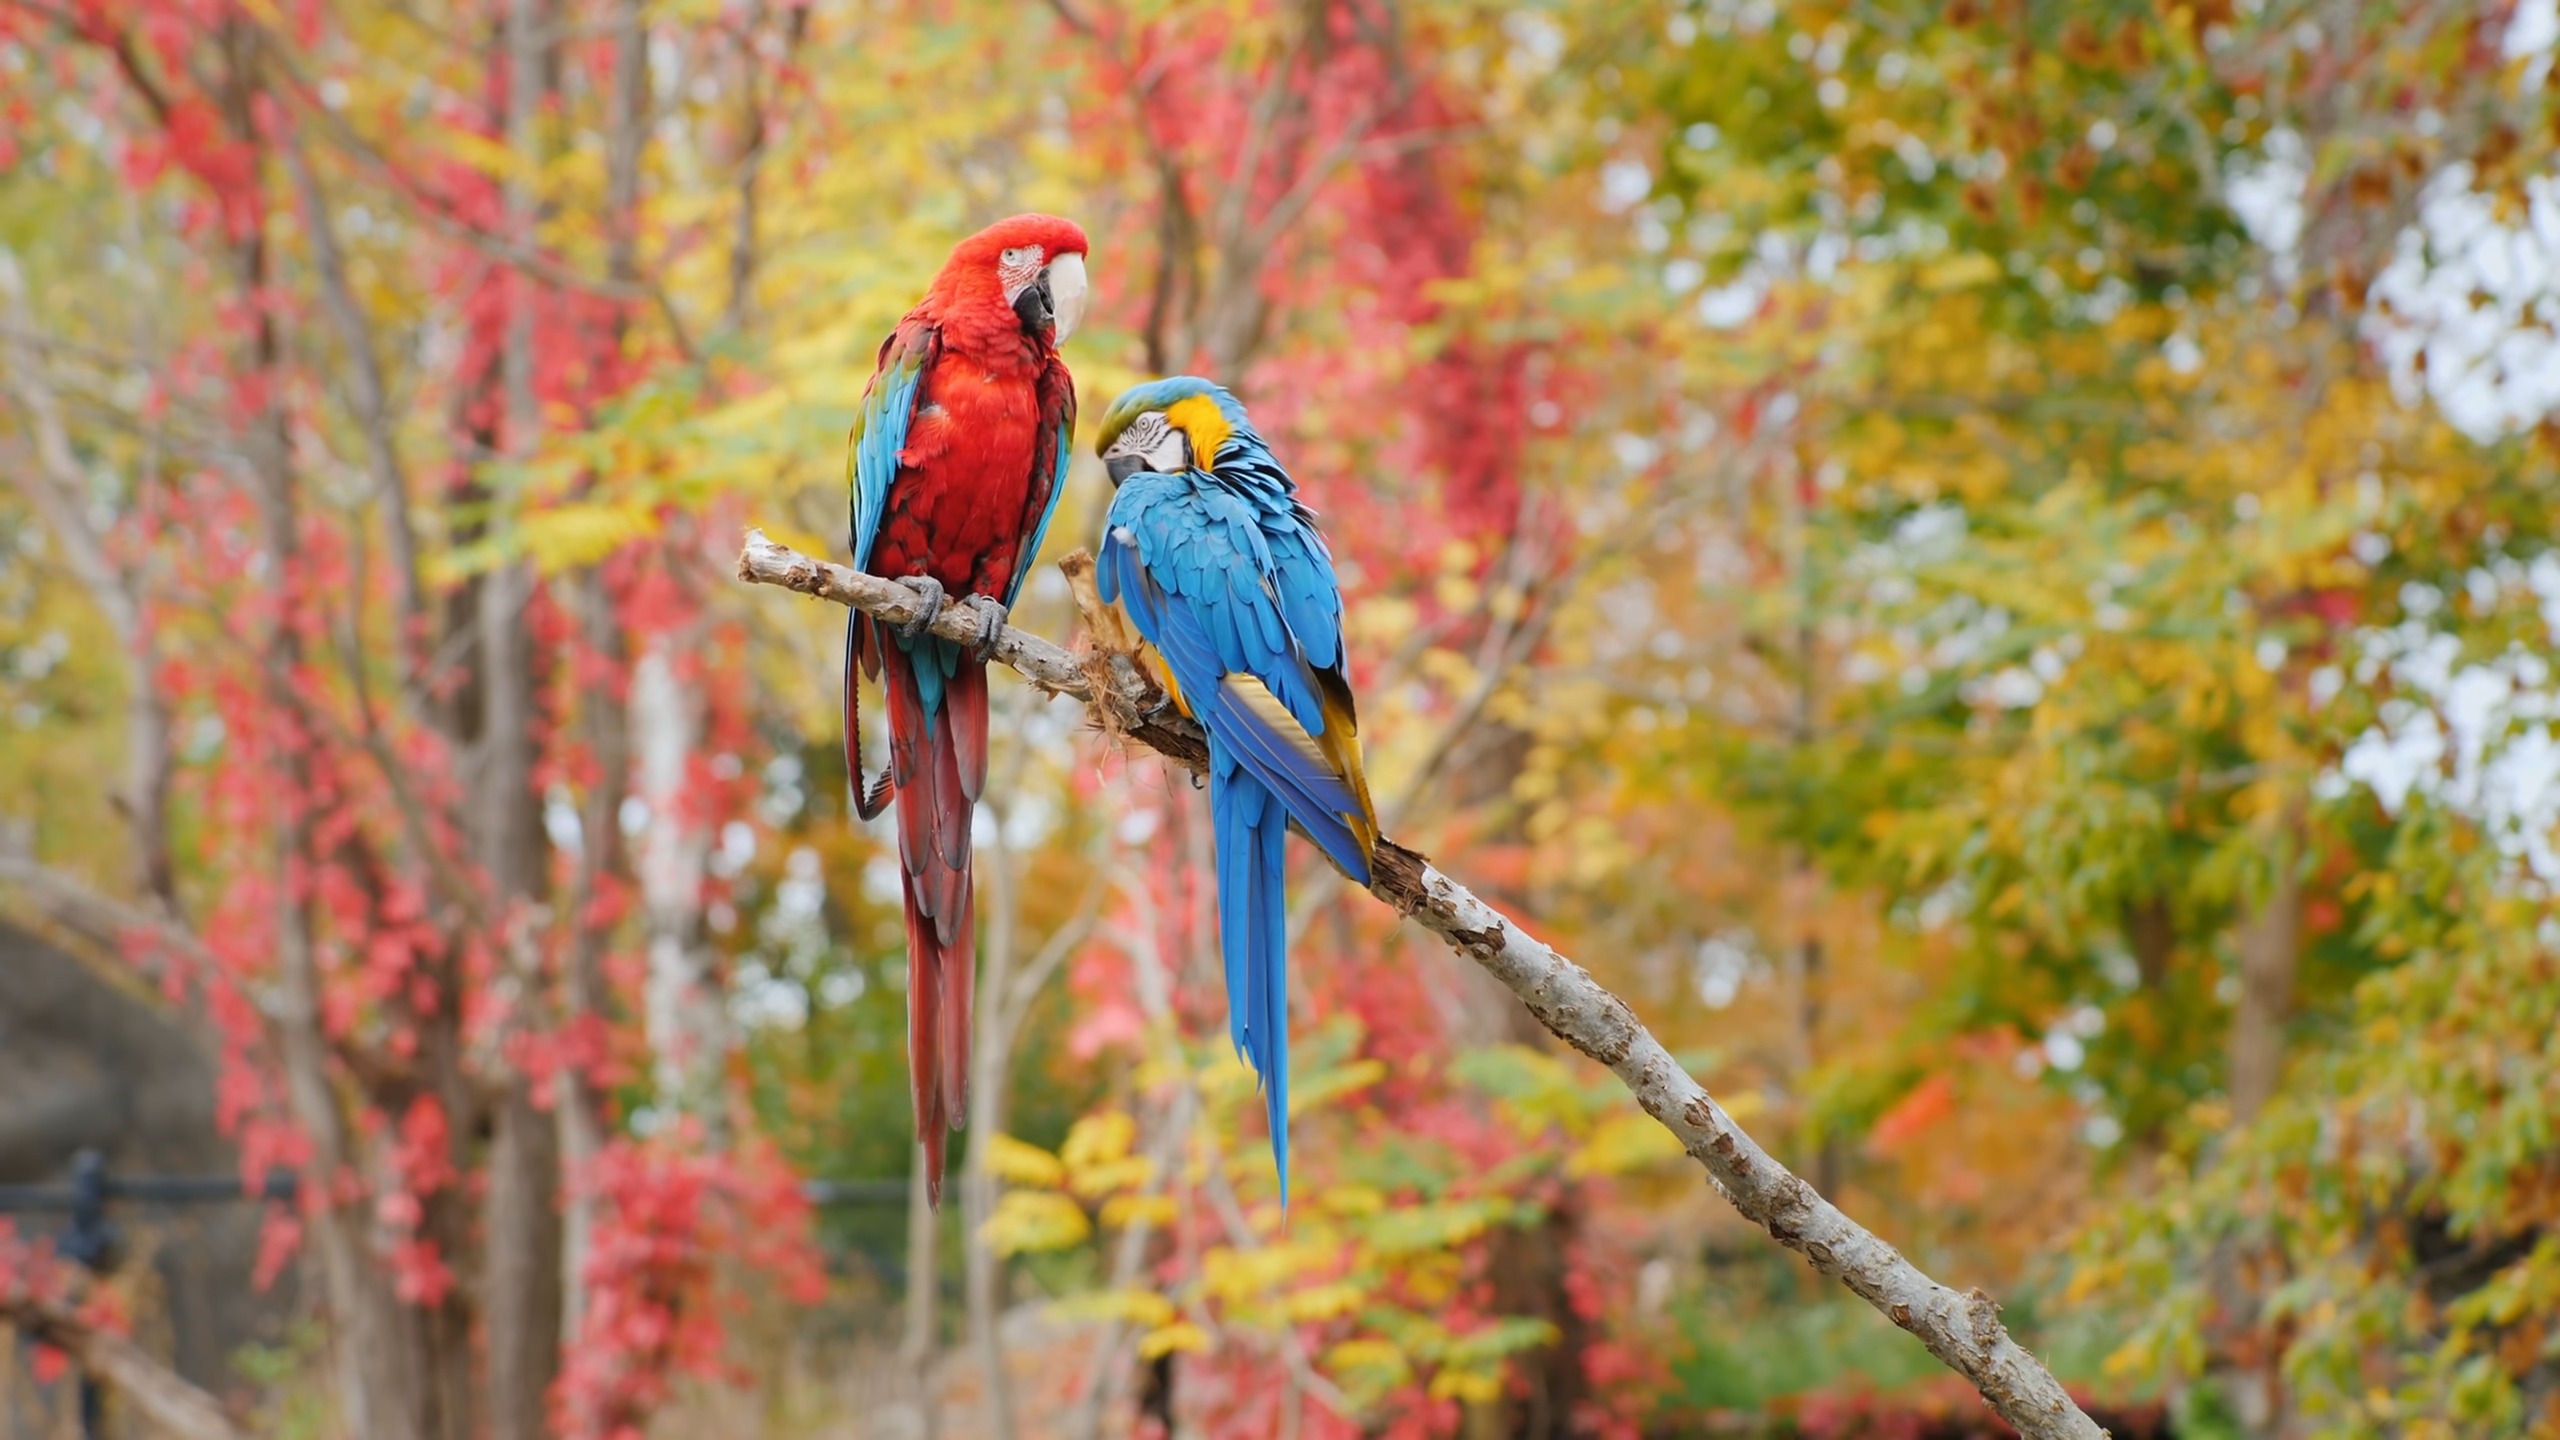 Parrots - herbivores